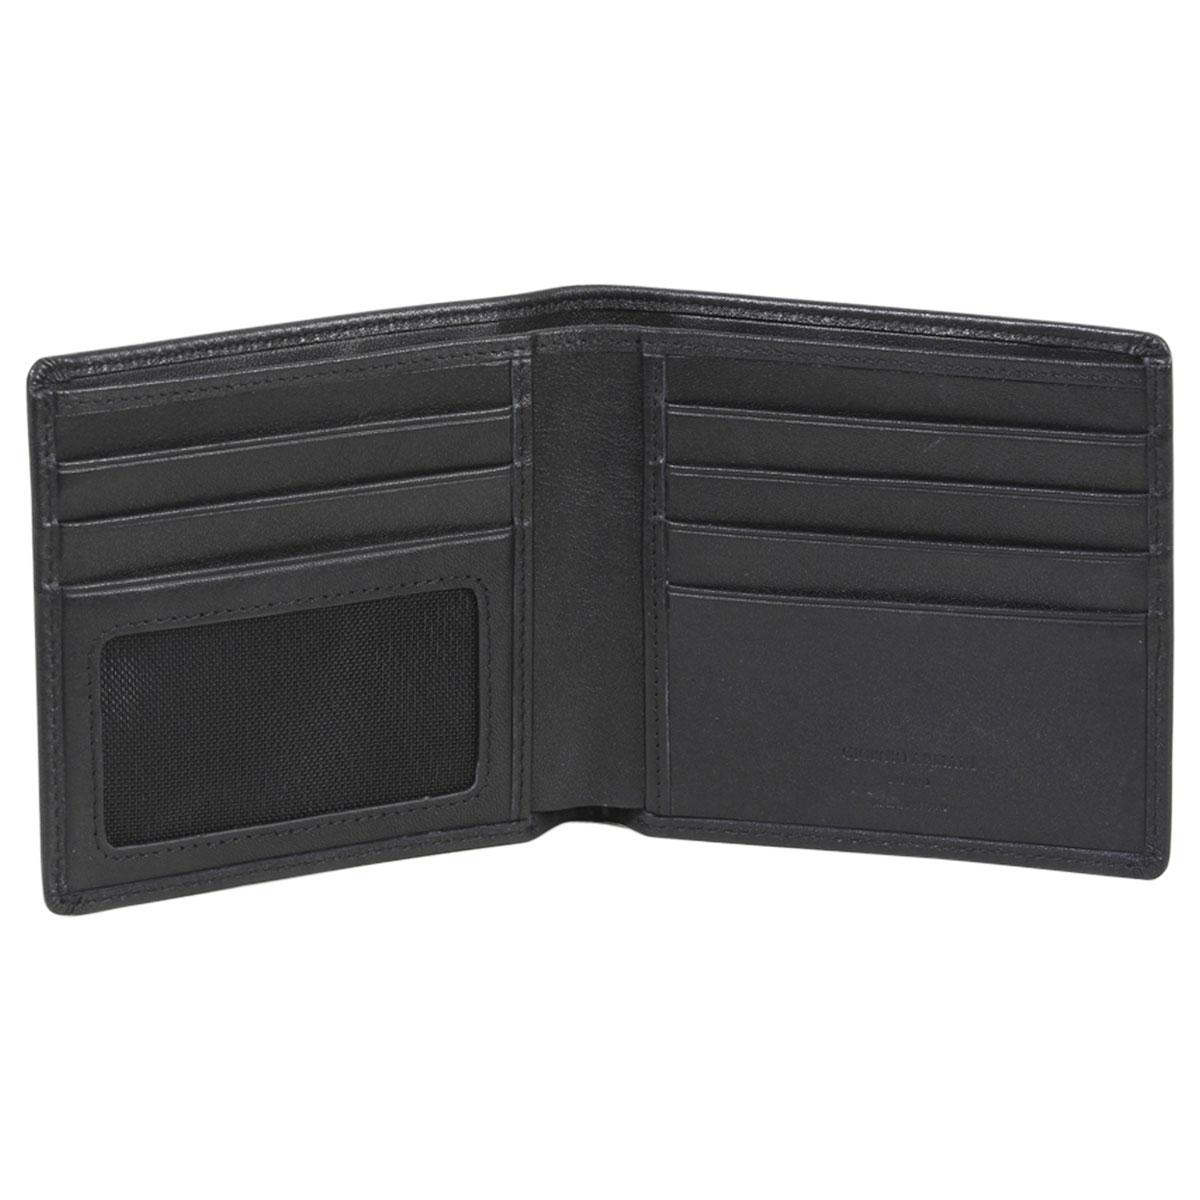 Giorgio Armani Men's Portafoglio Genuine Leather Bi-Fold Wallet ...